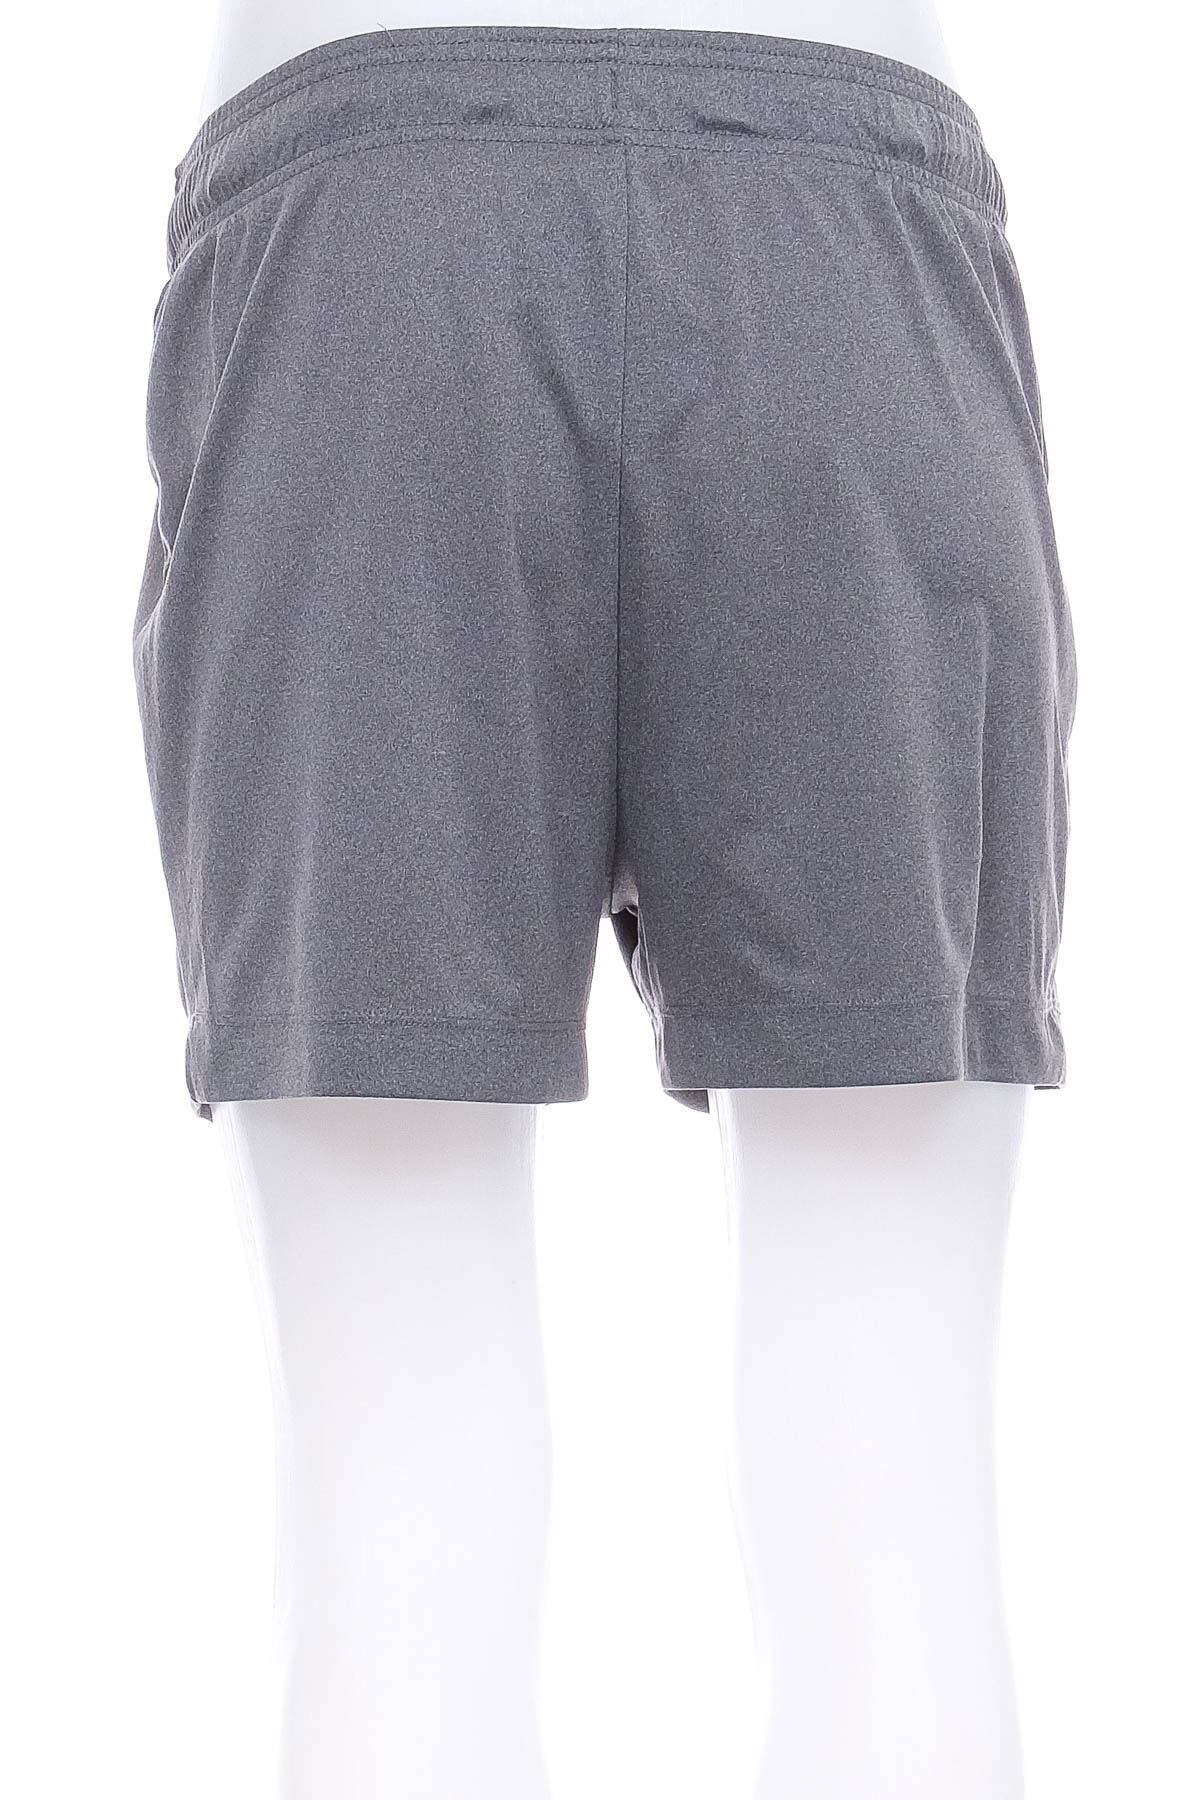 Female shorts - Crivit - 1